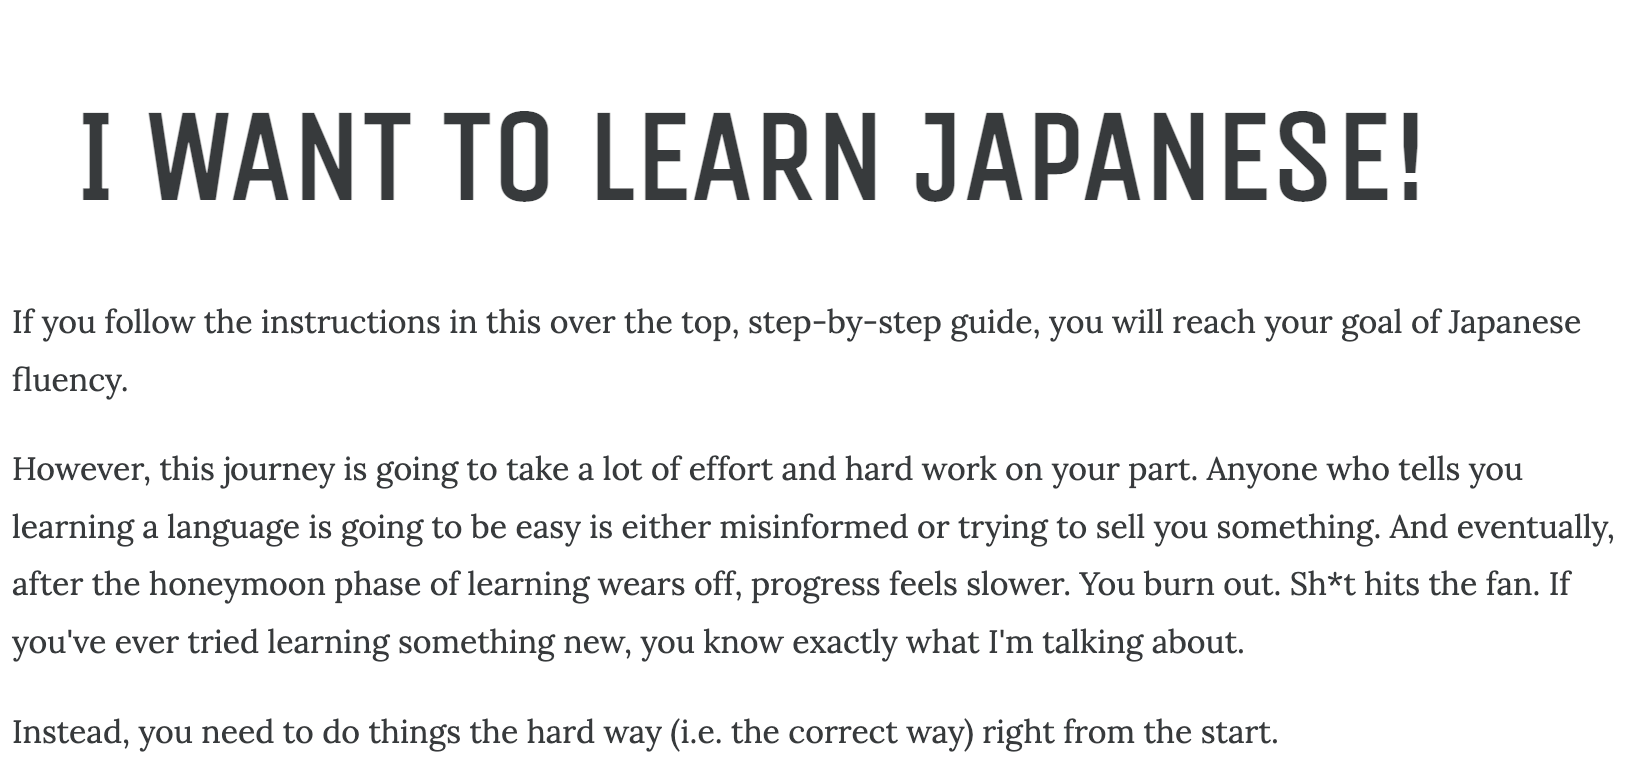 Estratto della guida di Tofugu per imparare il giapponese